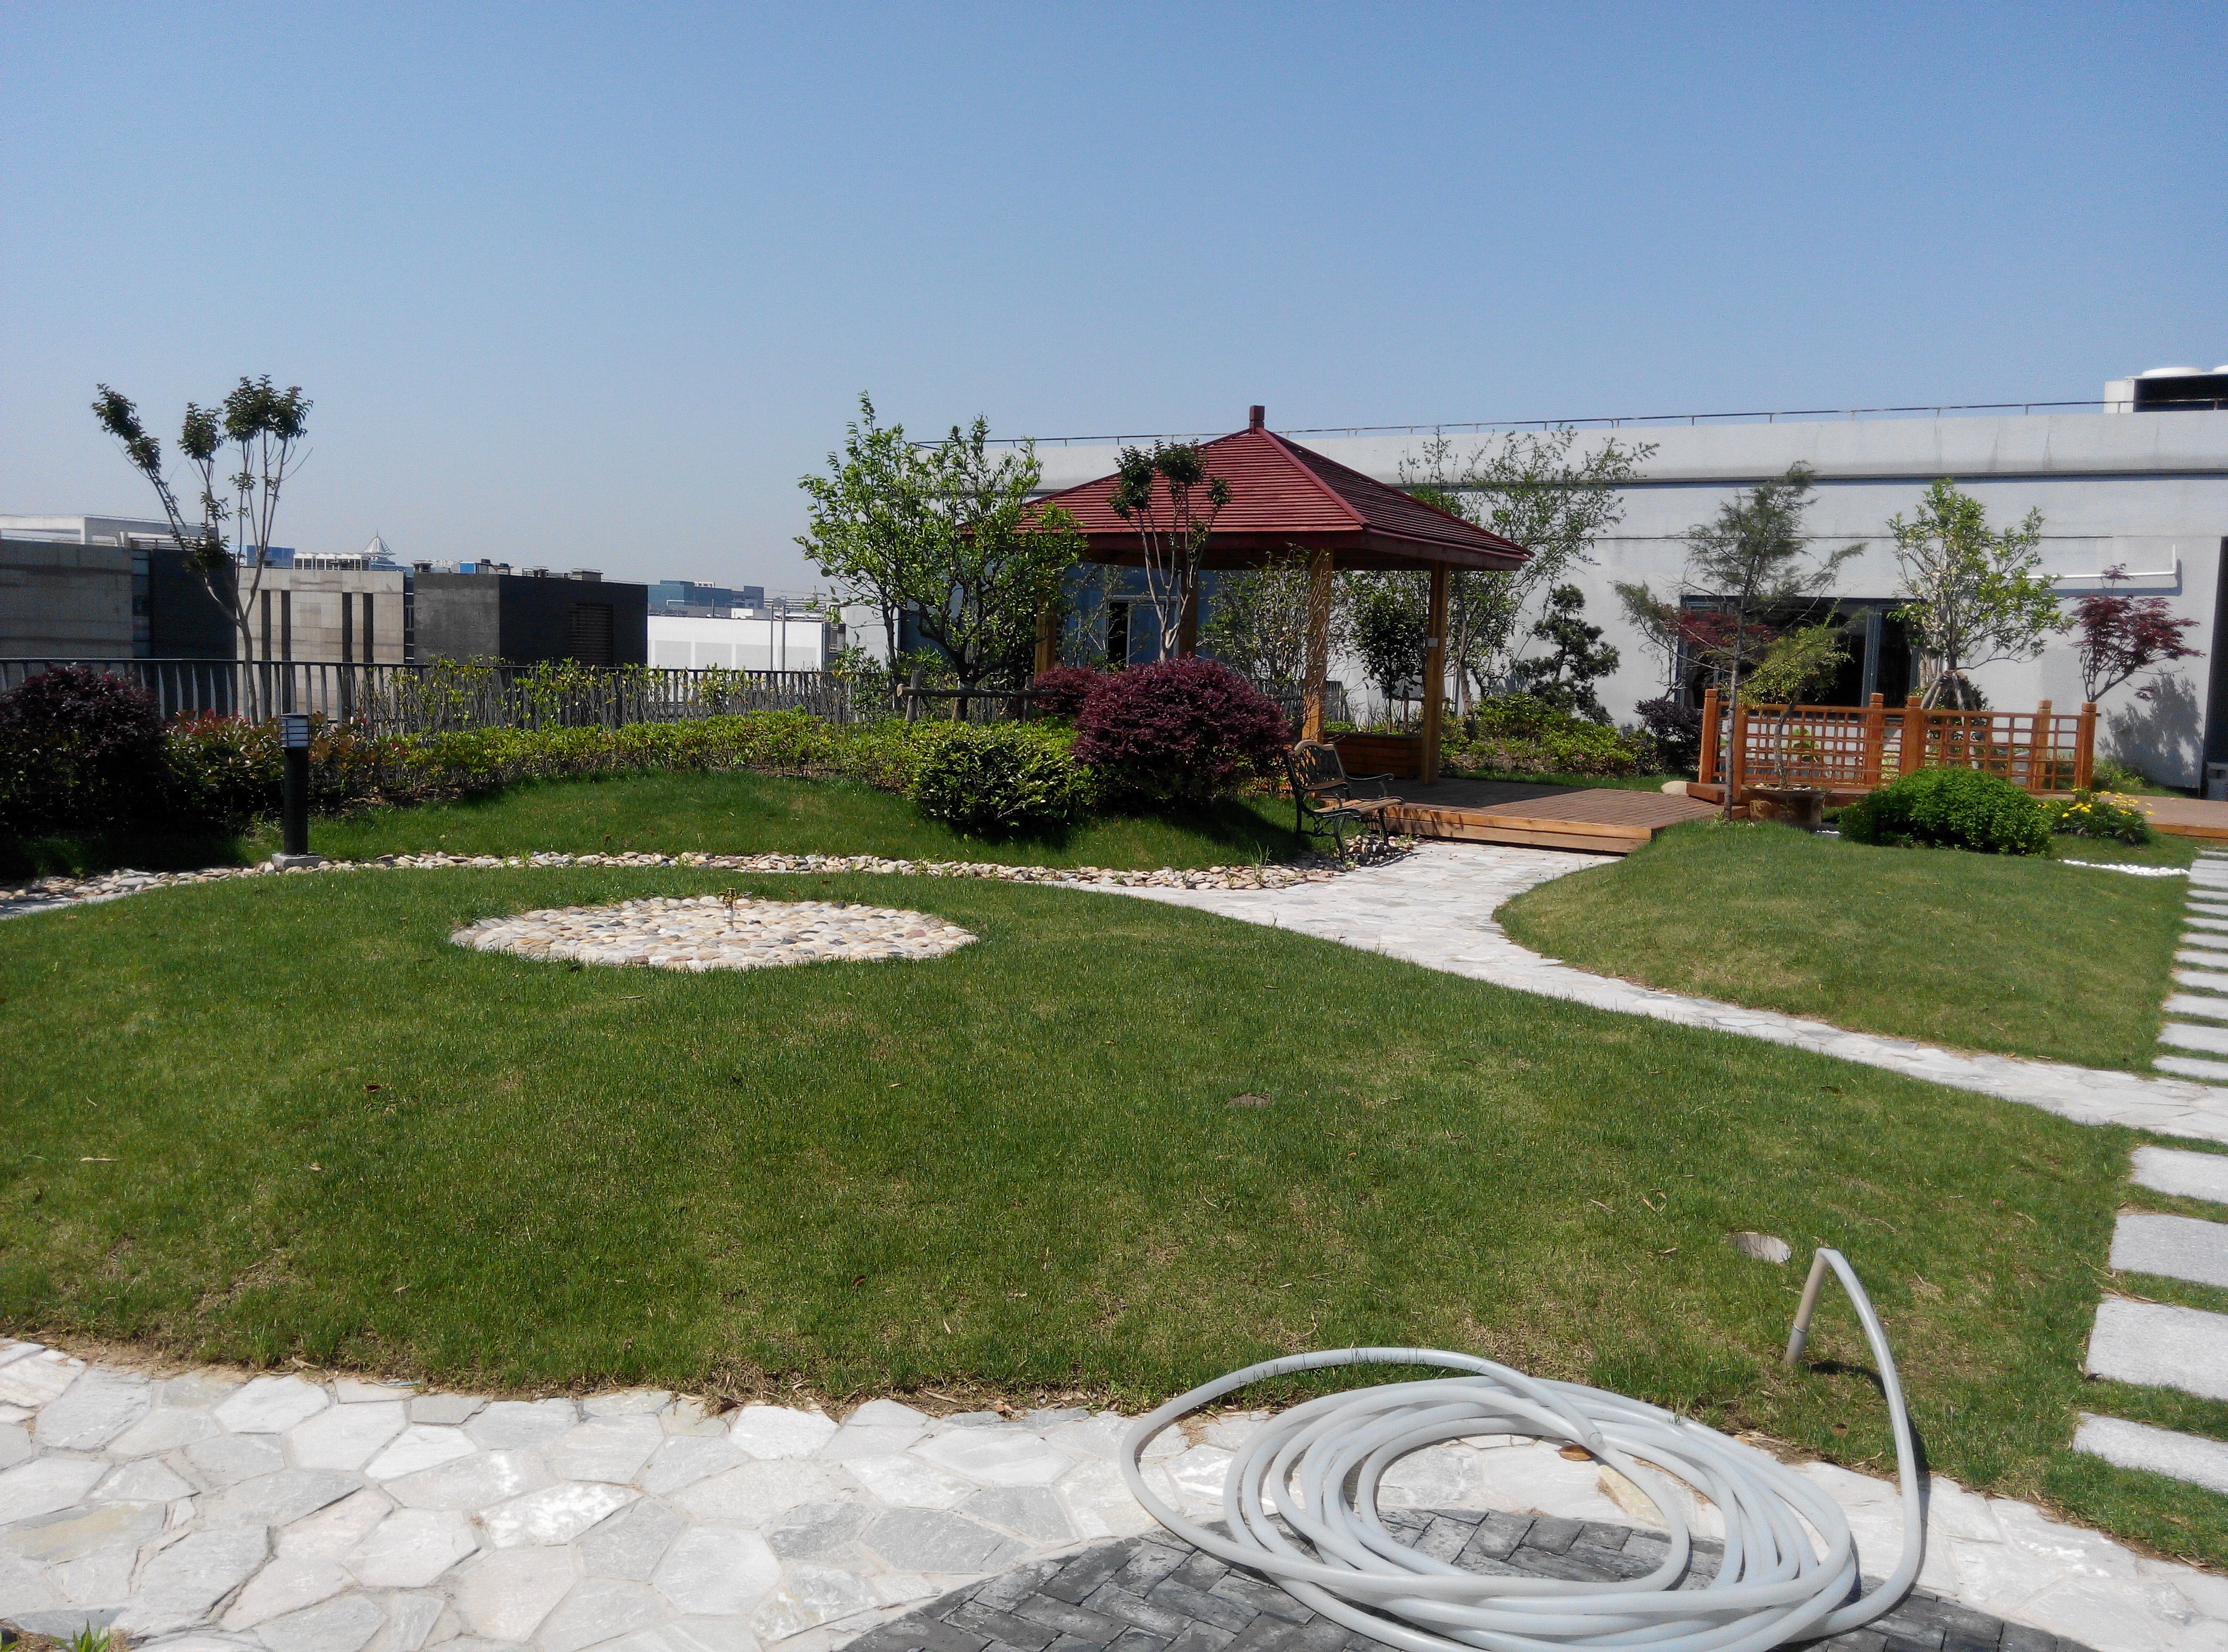 别墅庭院景观绿化工程花园设计草皮上海南汇别墅庭院景观绿化工程花园设计草皮(草坪)种植翻新修剪养护工程